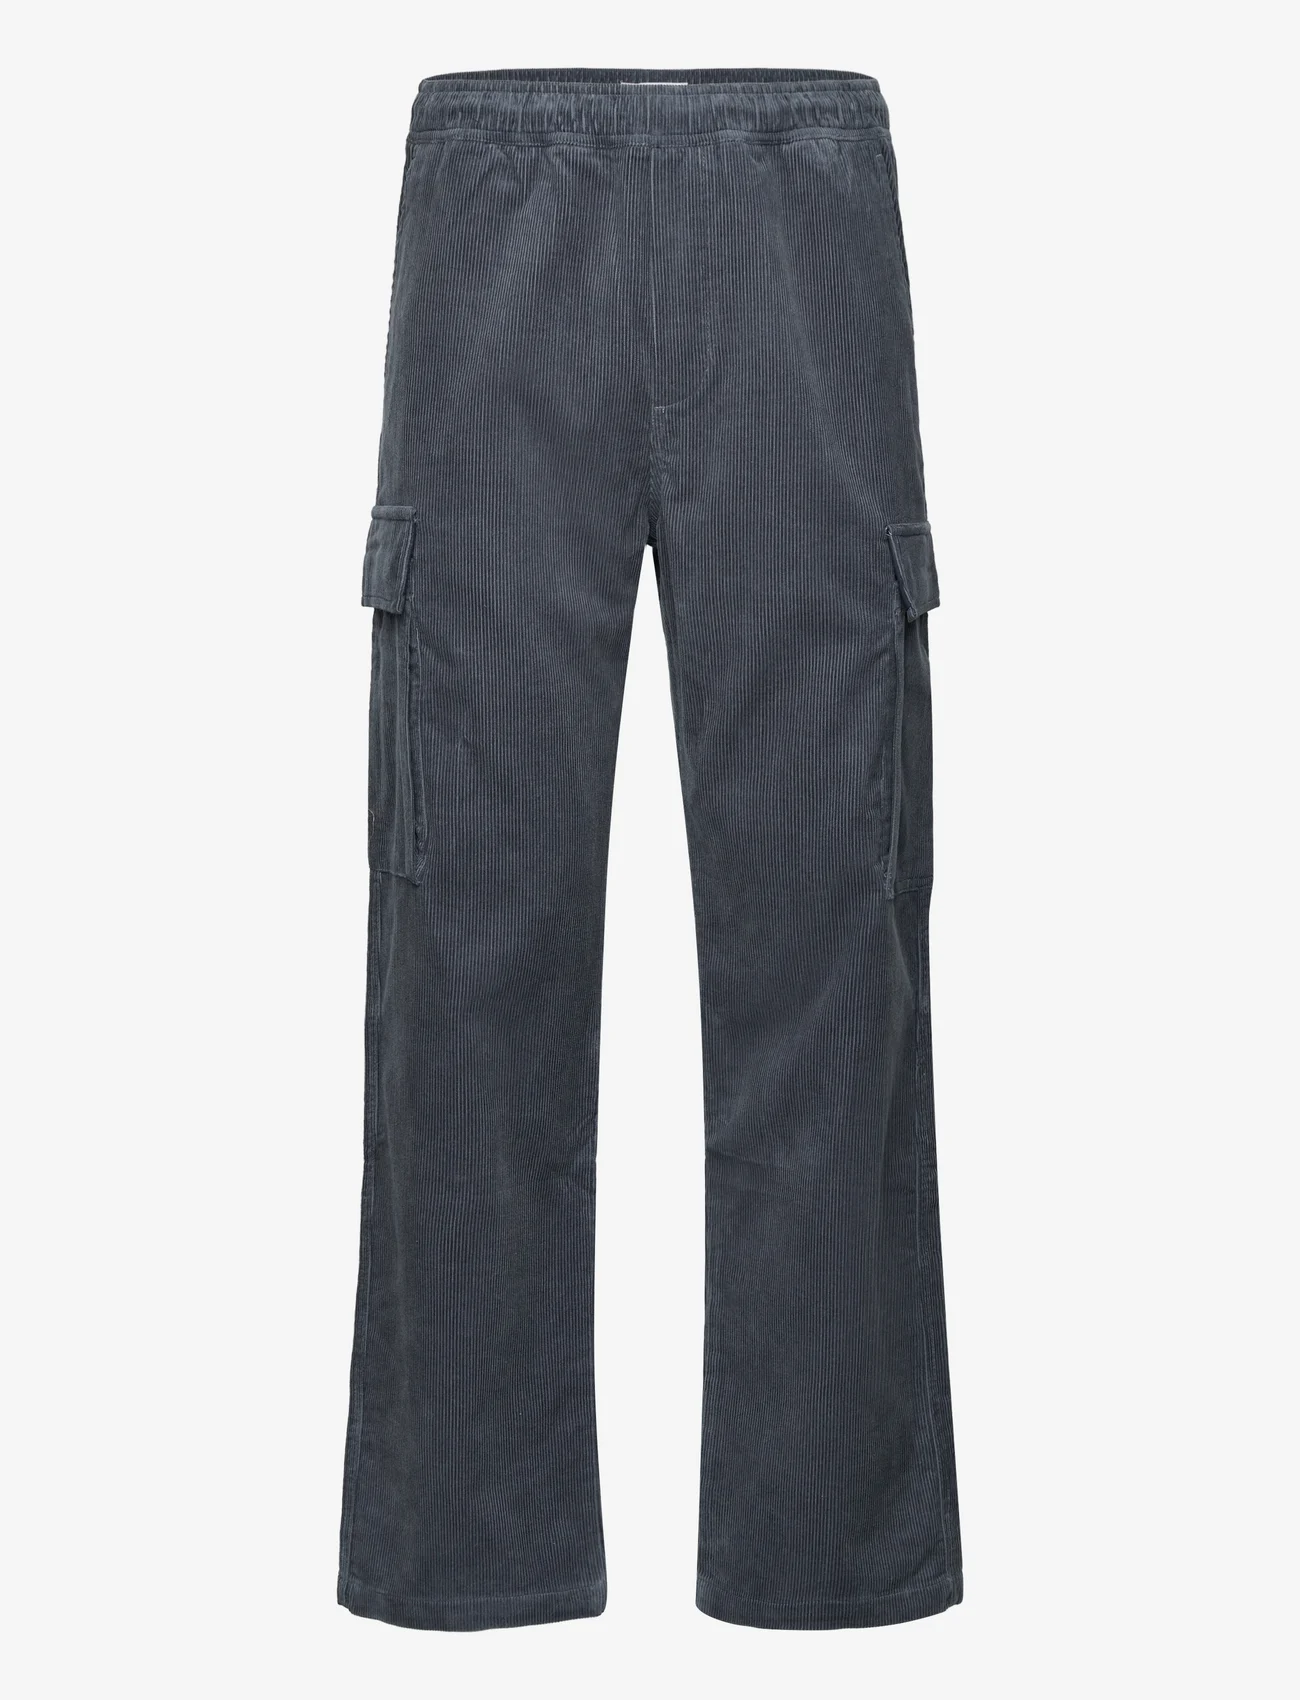 Samsøe Samsøe - Jabari x cargo trousers 14934 - cargo stila bikses - stormy weather - 0